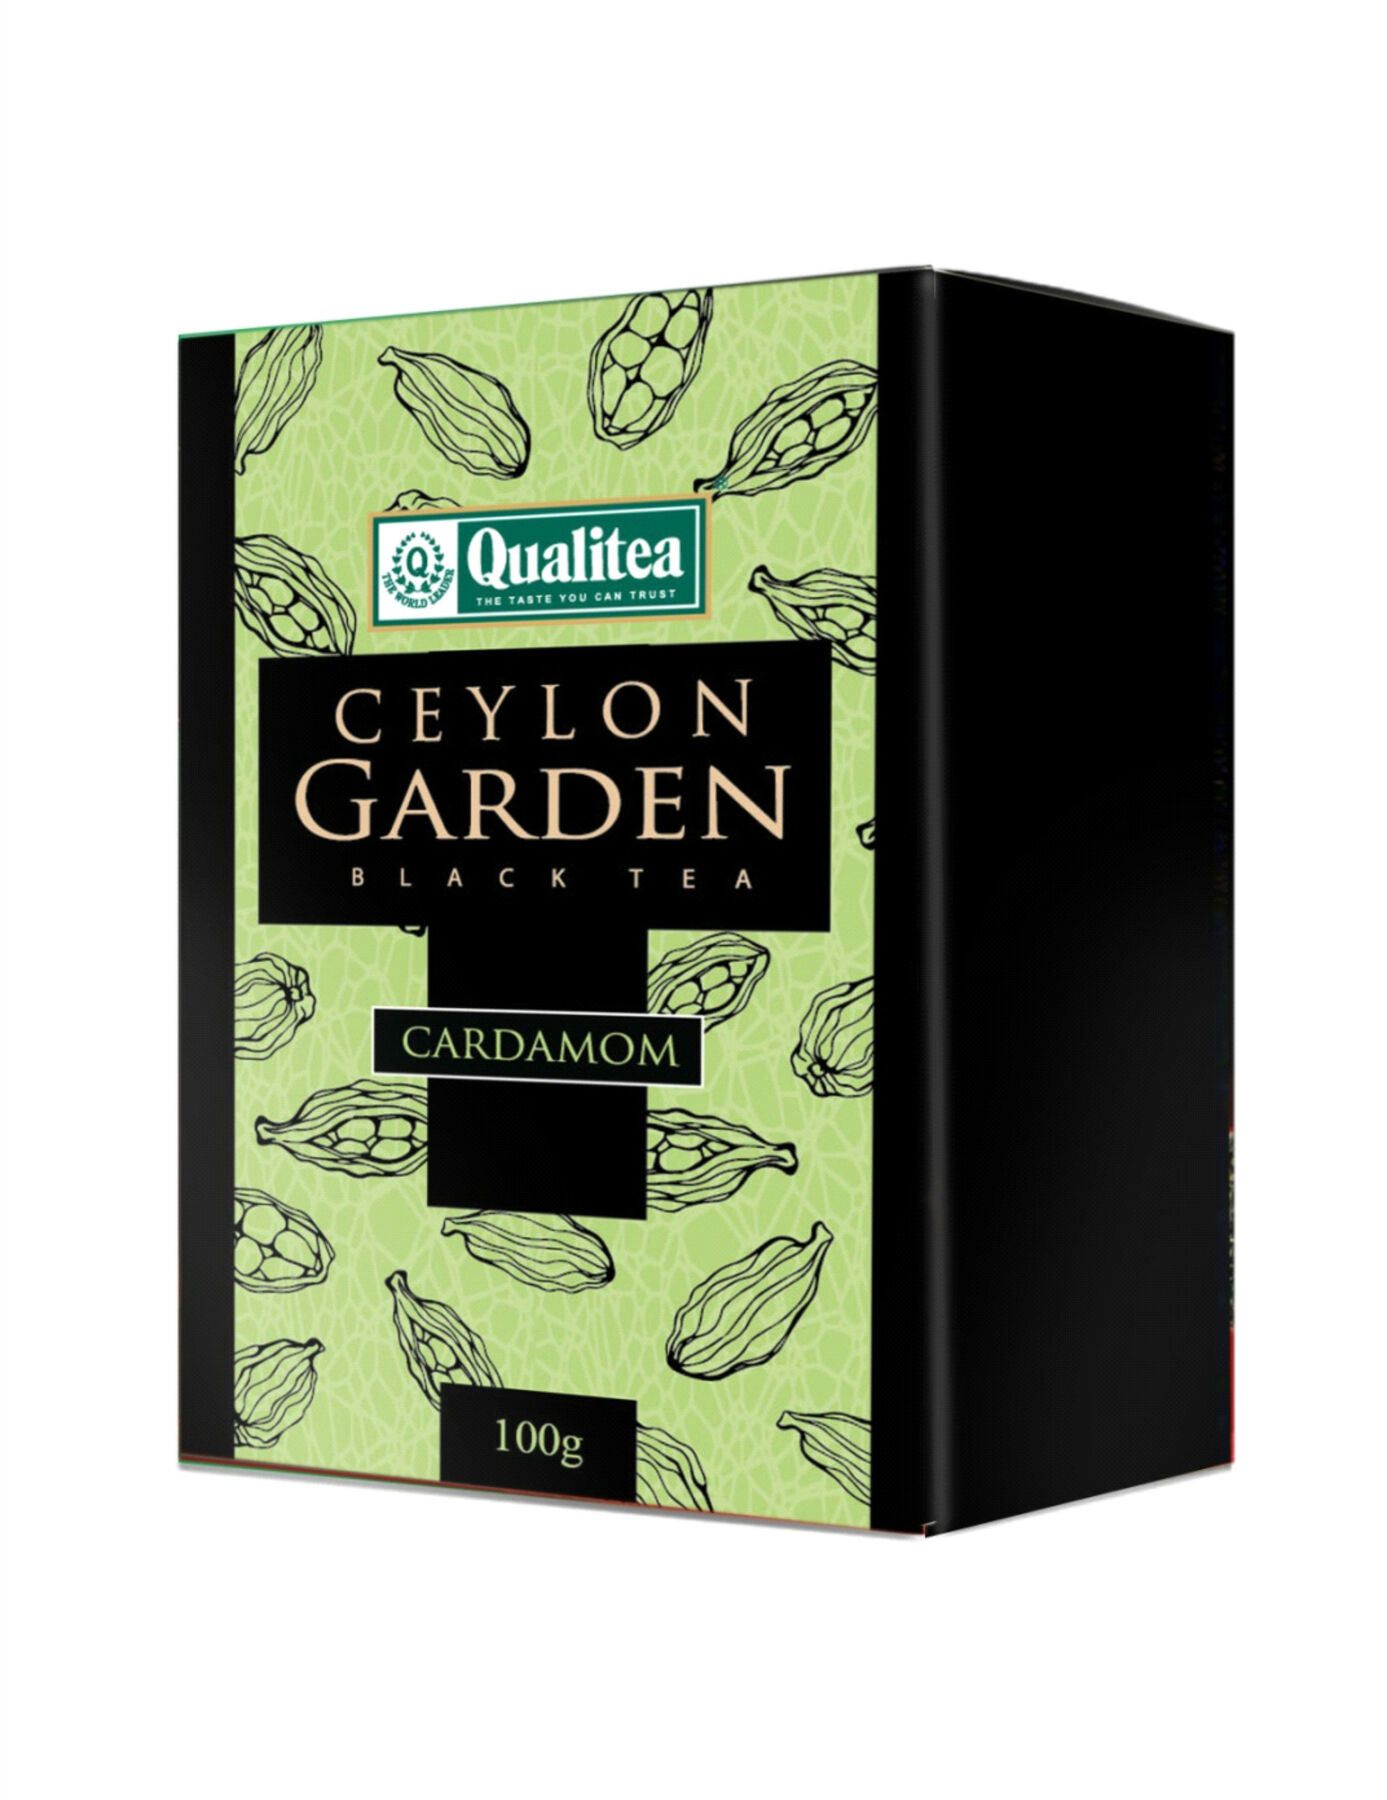 Чай "Кволити" Цейлонский сад. Черный чай с кардамоном, картон, Шри-Ланка, 80 гр.